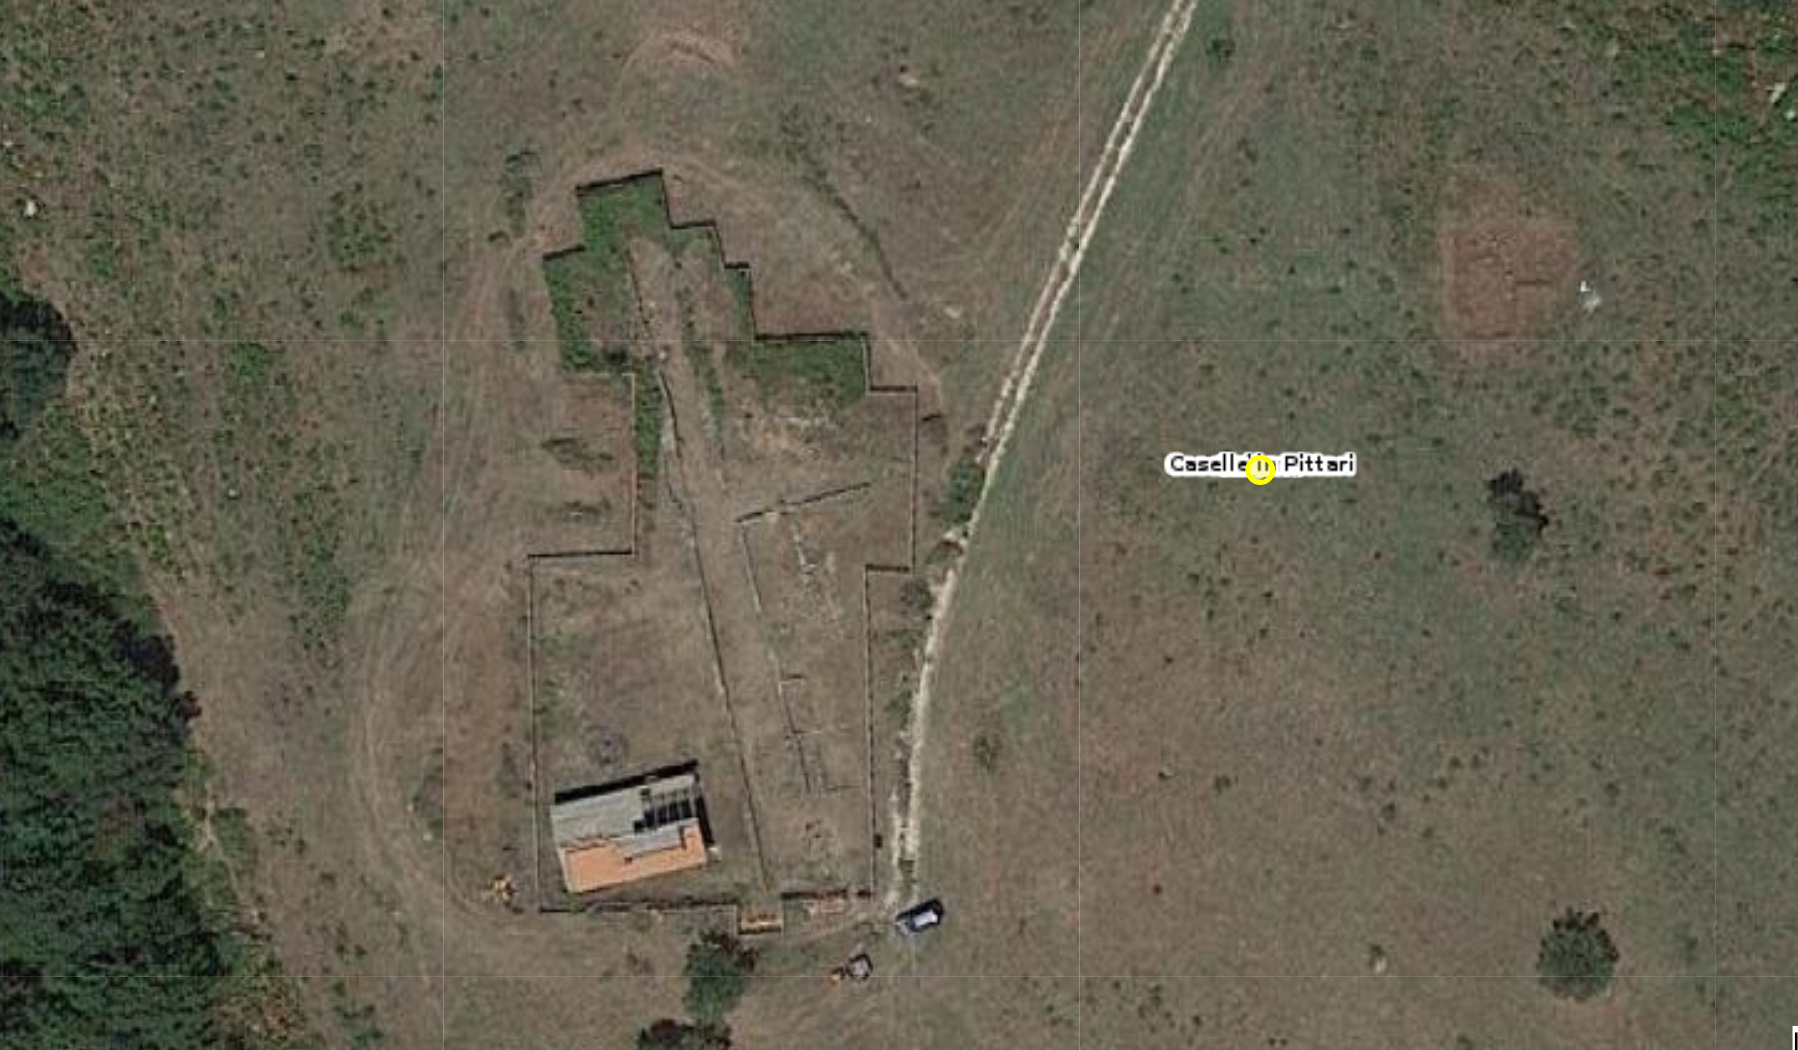 Abitato antico di Caselle in Pittari (area urbana, struttura abitativa) - Caselle in Pittari (SA)  (secc. IV/ III a. C)